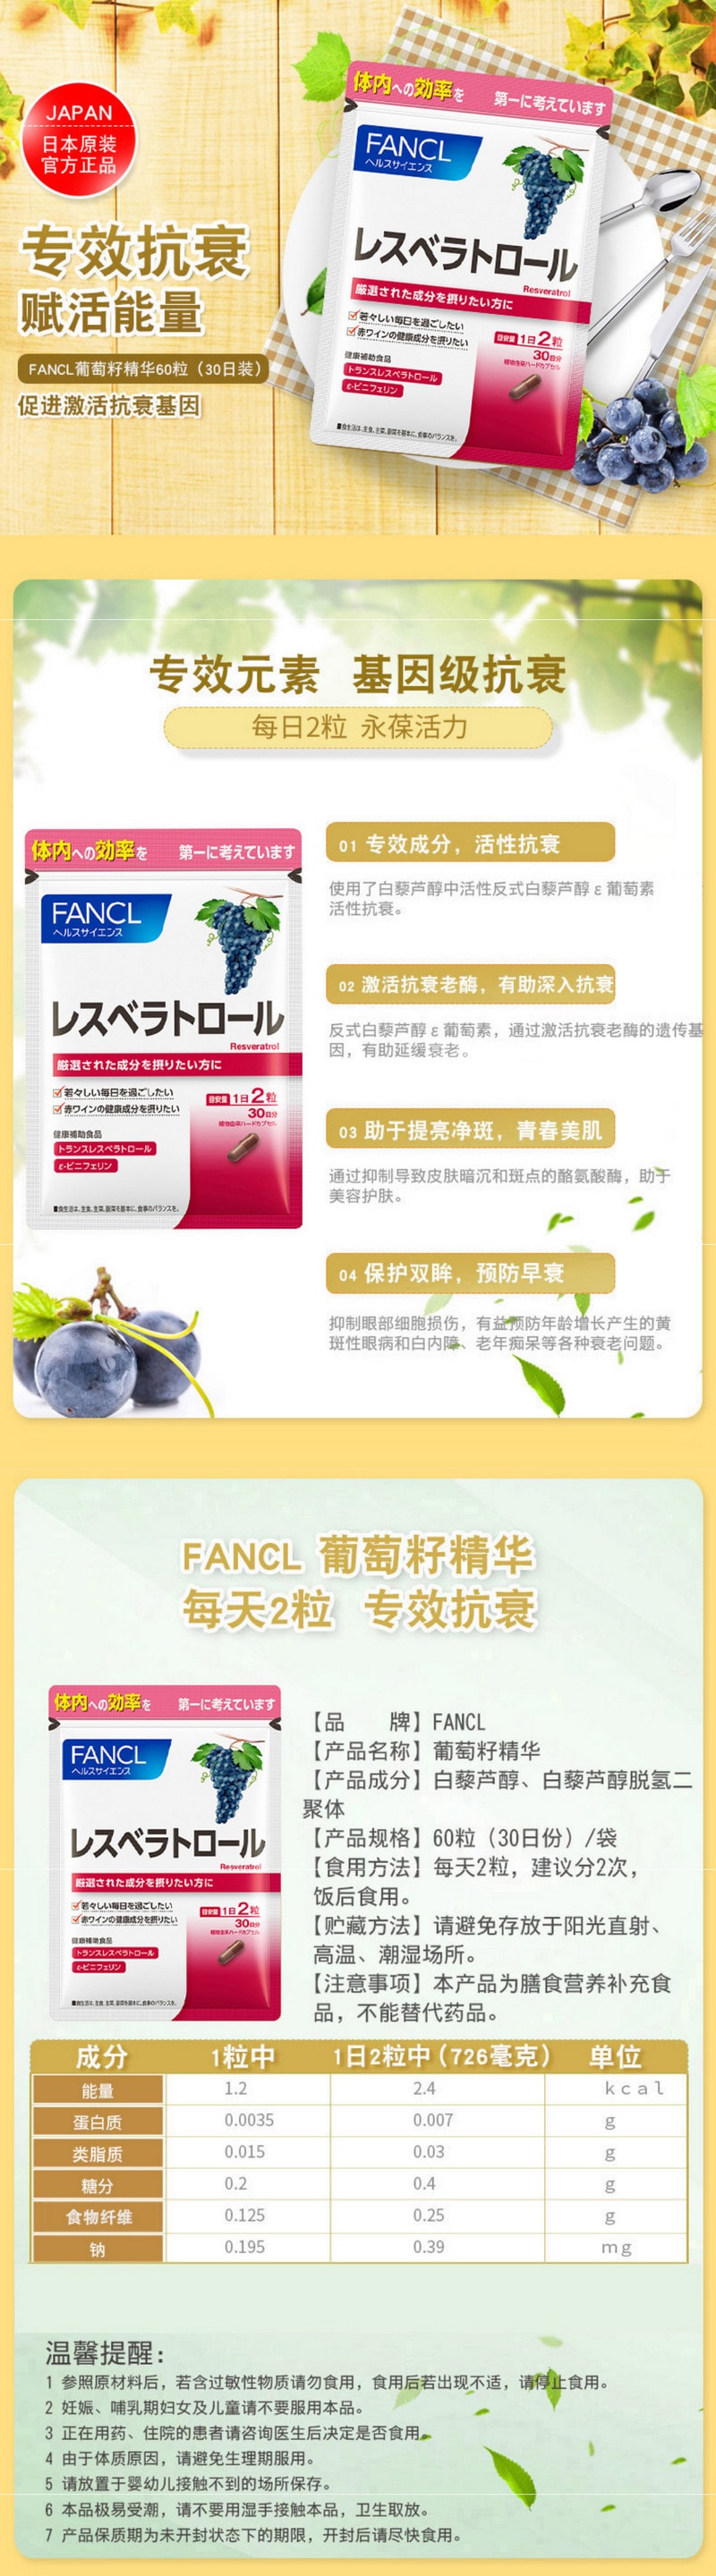 【日本直效郵件】FANCL芳珂 美白去黃除暗沉白藜蘆醇亮白白肌葡萄籽 60粒30日份